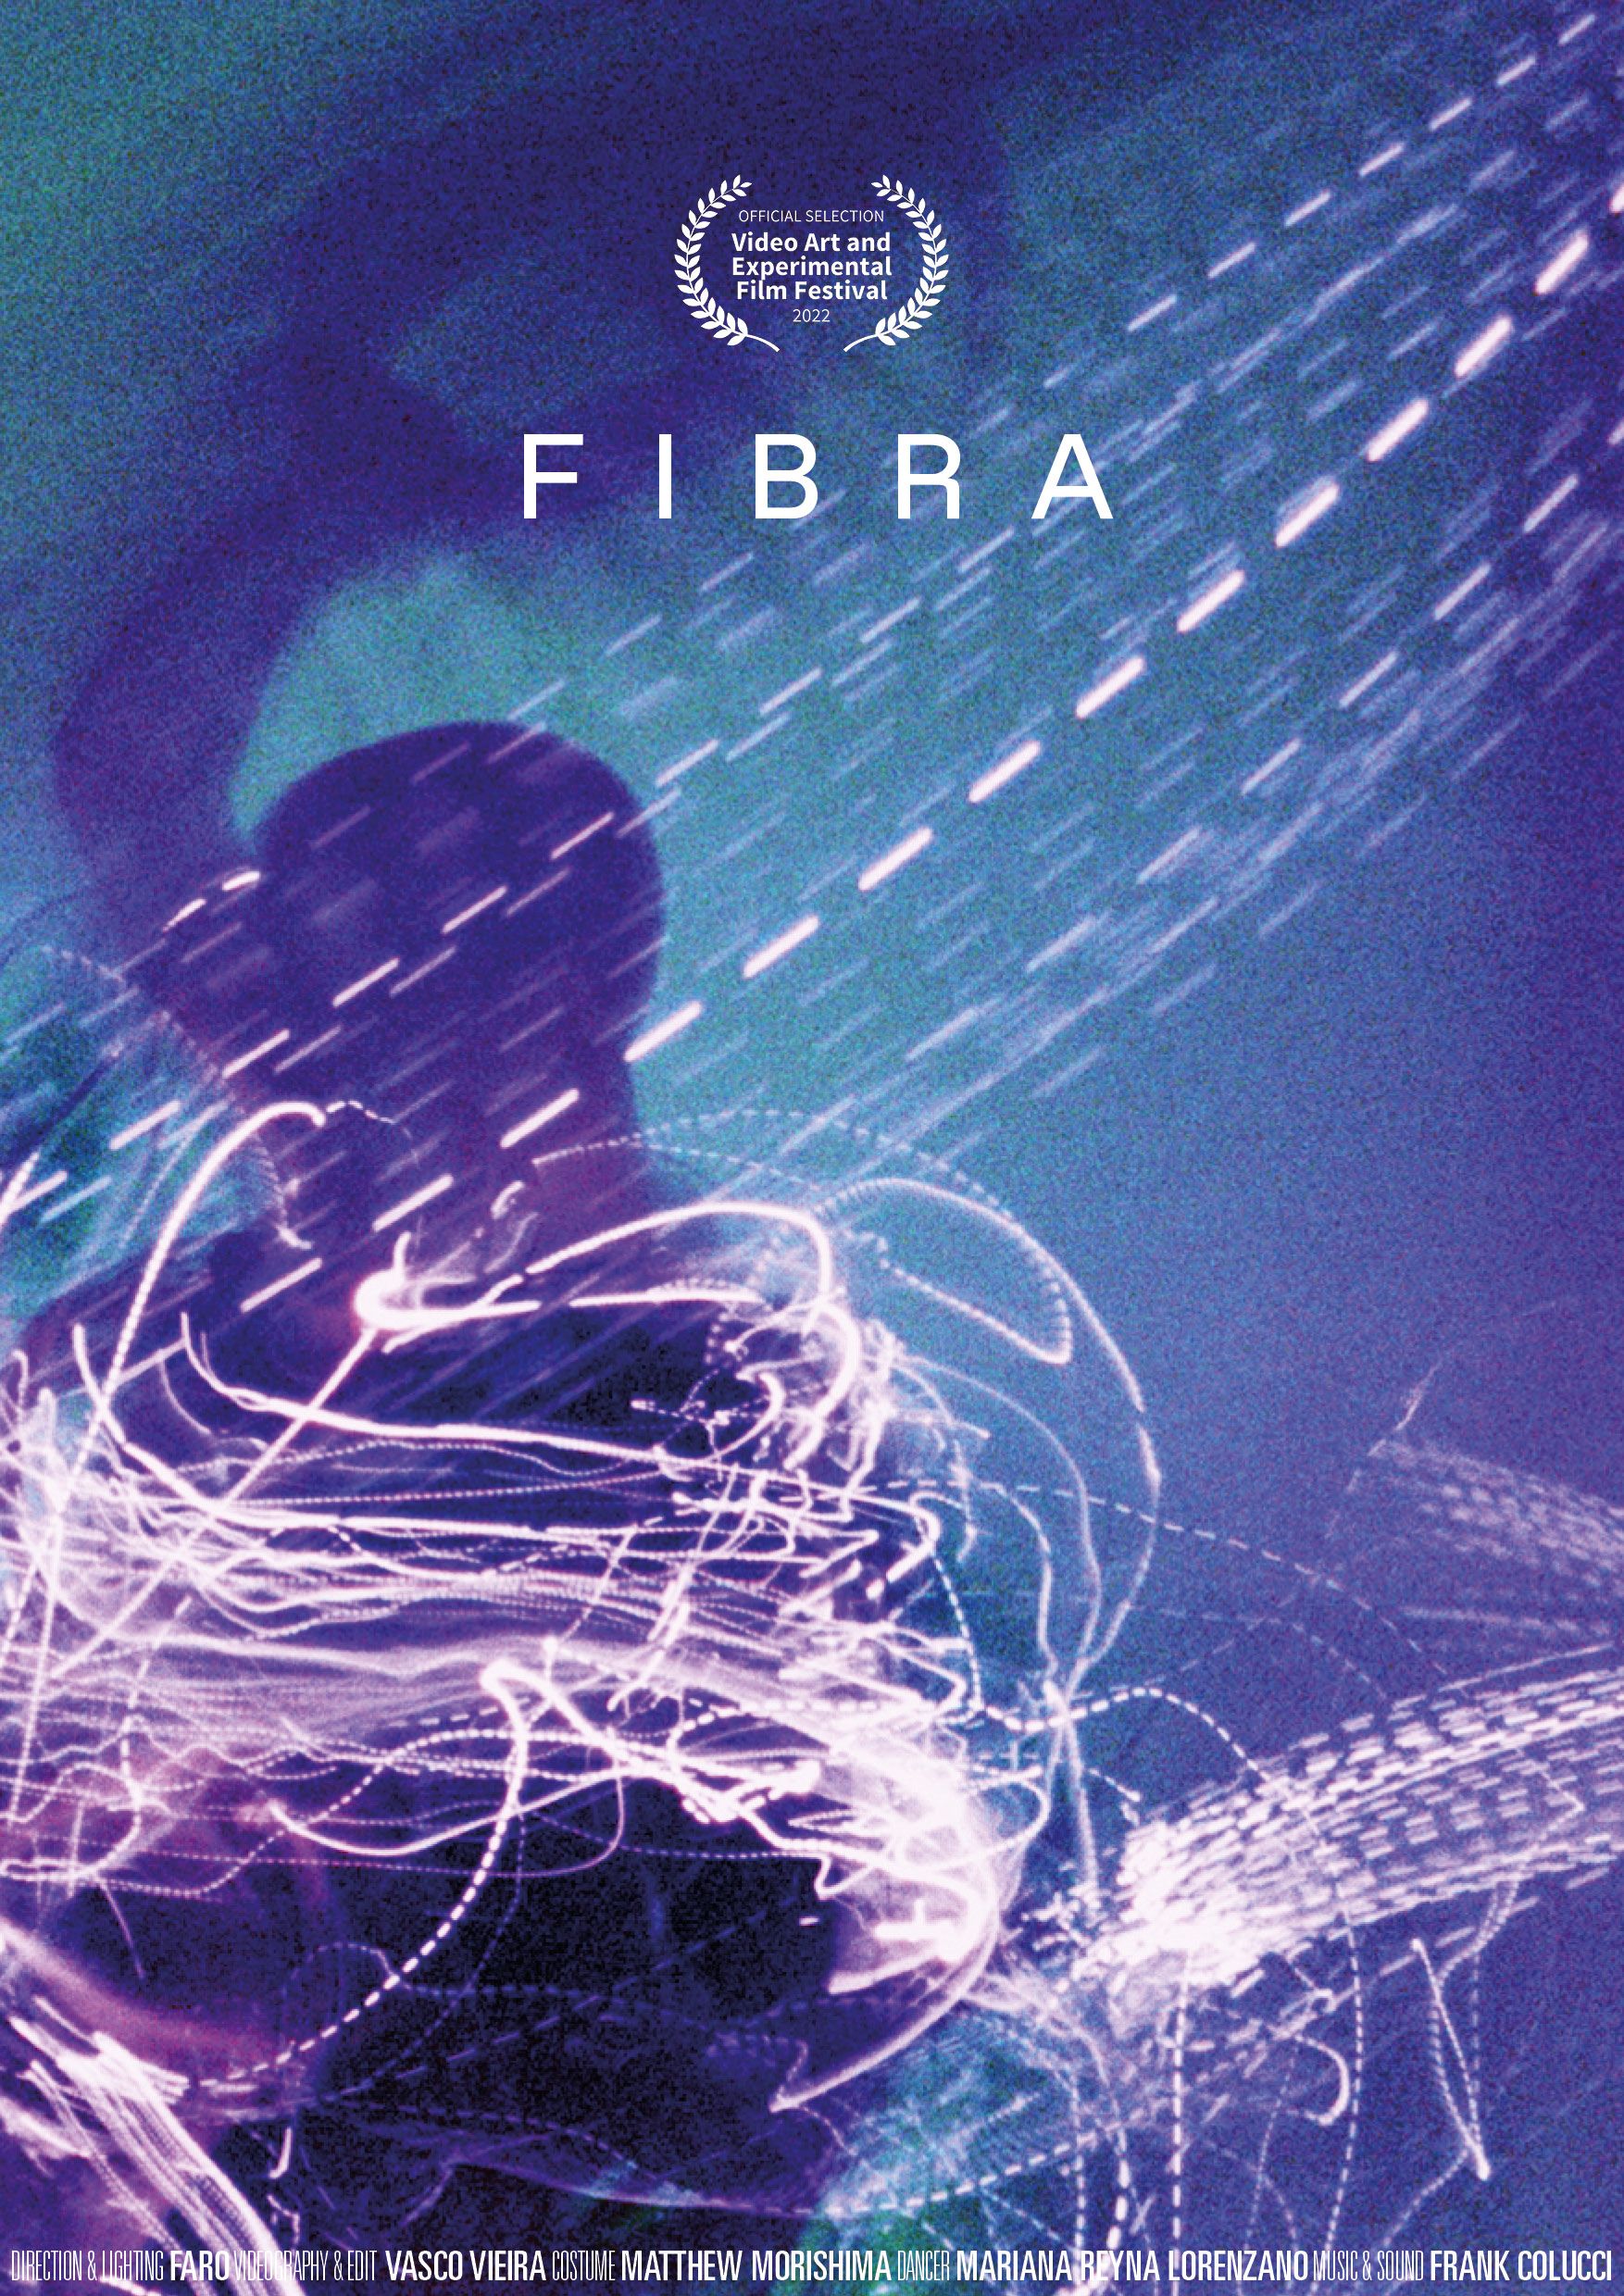 FARO | FIBRA